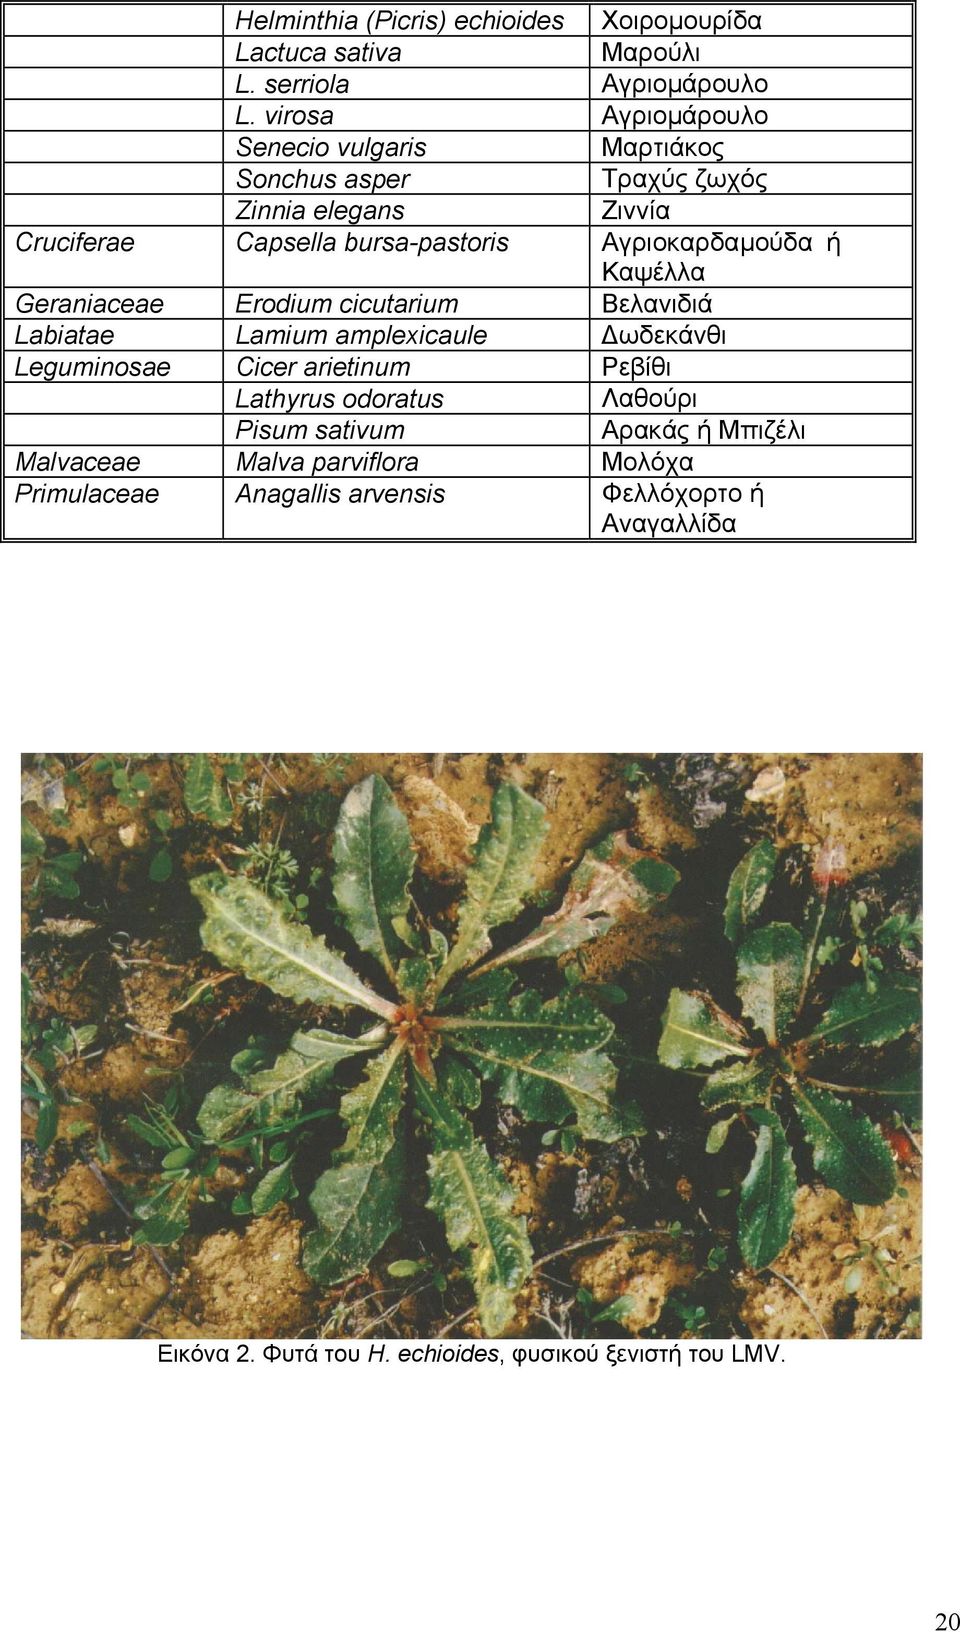 Αγριοκαρδαµούδα ή Καψέλλα Geraniaceae Erodium cicutarium Βελανιδιά Labiatae Lamium amplexicaule ωδεκάνθι Leguminosae Cicer arietinum Ρεβίθι